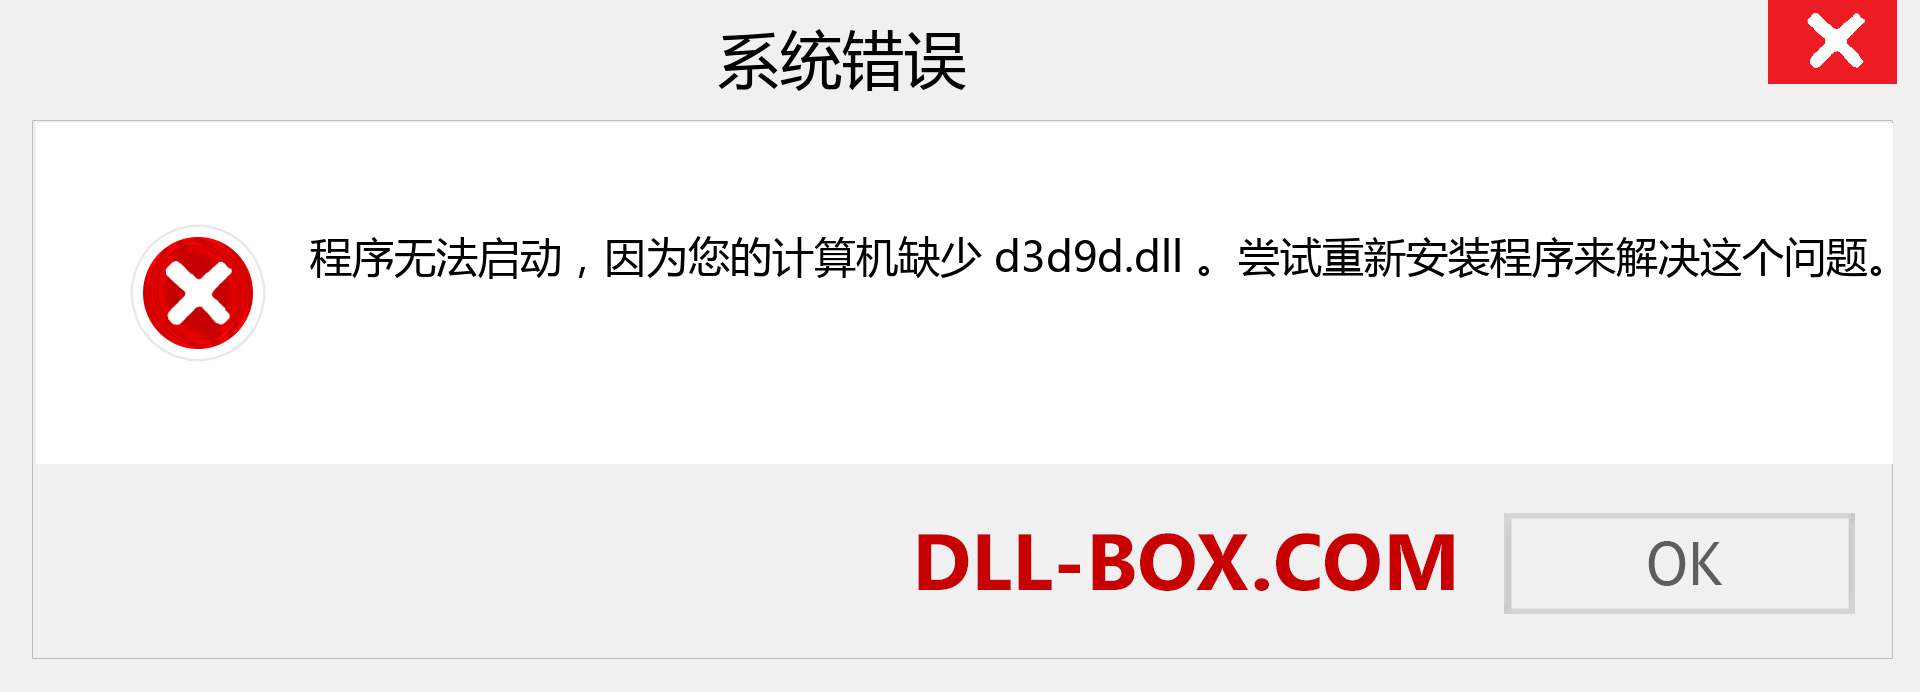 d3d9d.dll 文件丢失？。 适用于 Windows 7、8、10 的下载 - 修复 Windows、照片、图像上的 d3d9d dll 丢失错误